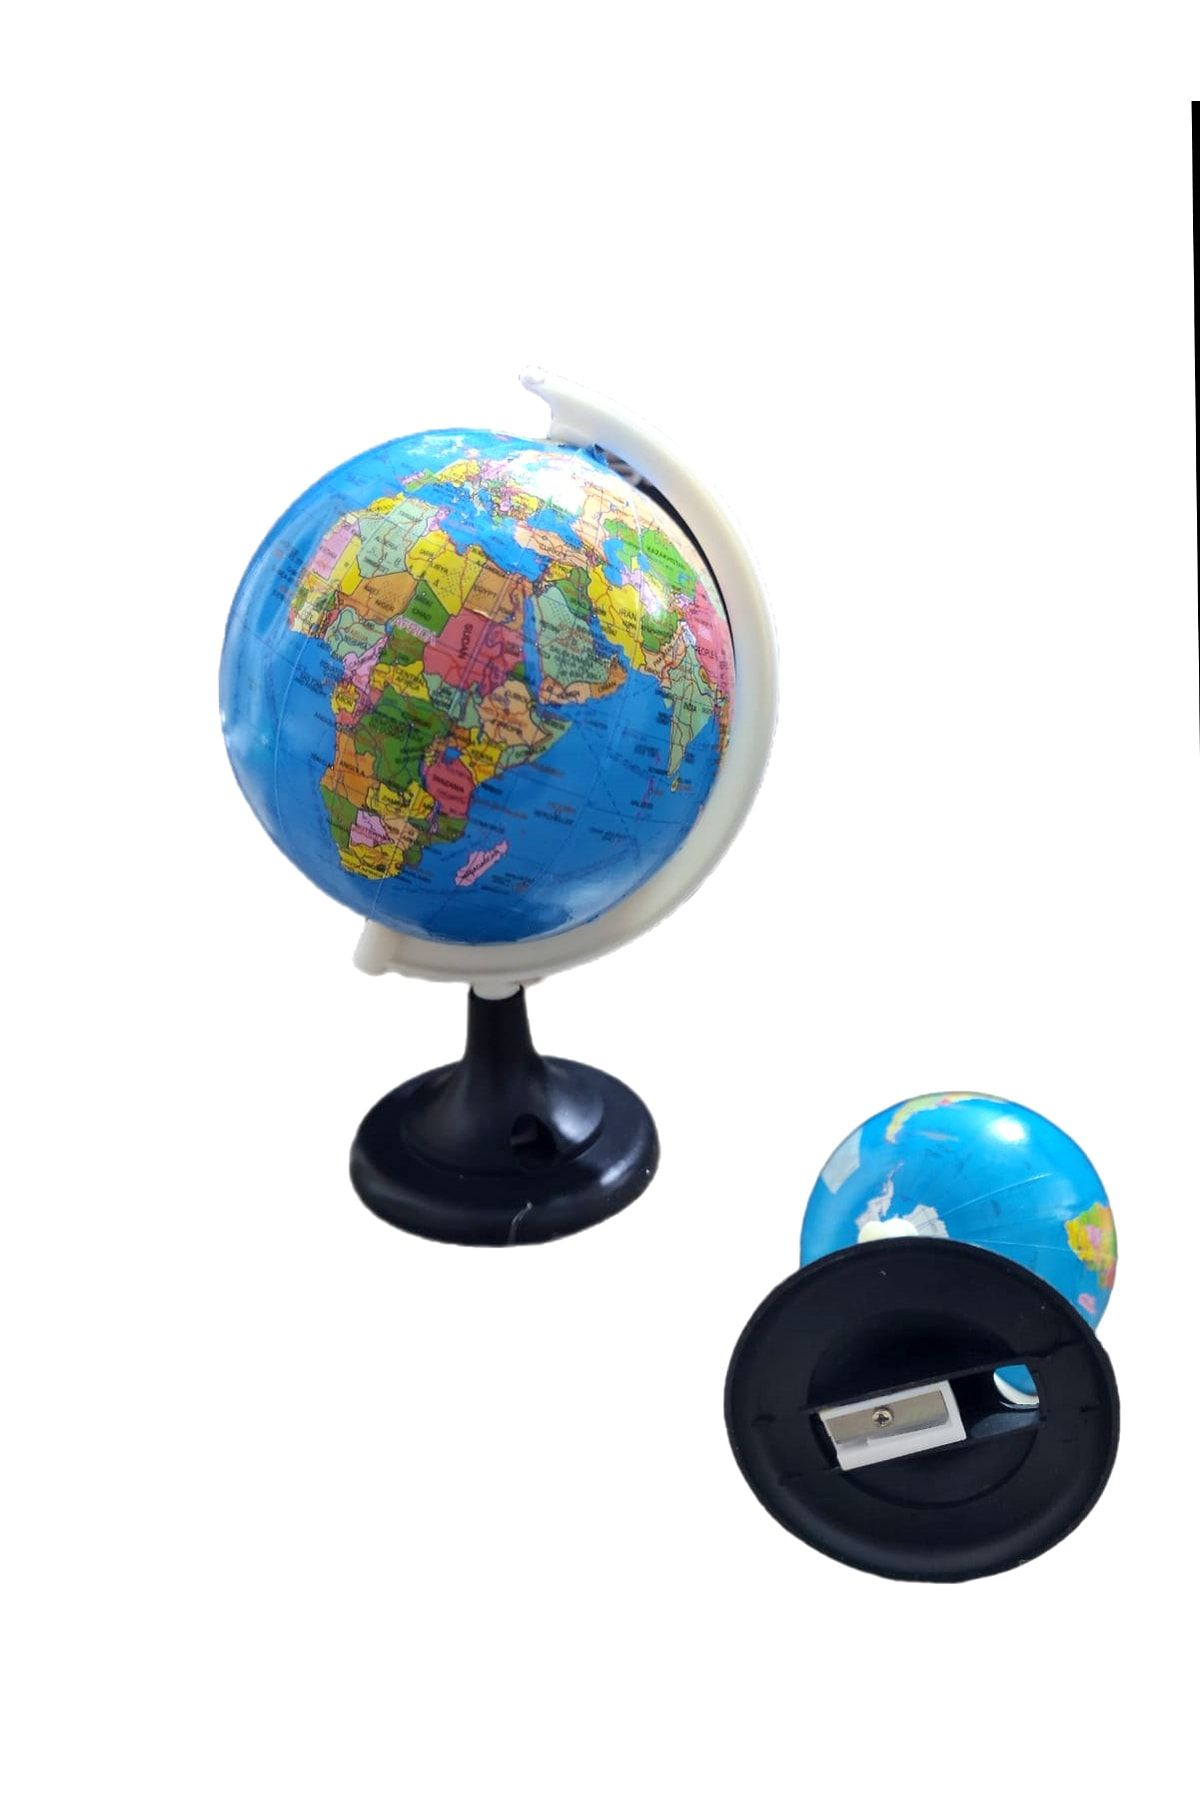 Limmy Küre Kalemtraş - Dünya Küresi Şekilli Kalemtraş - 1 Adet